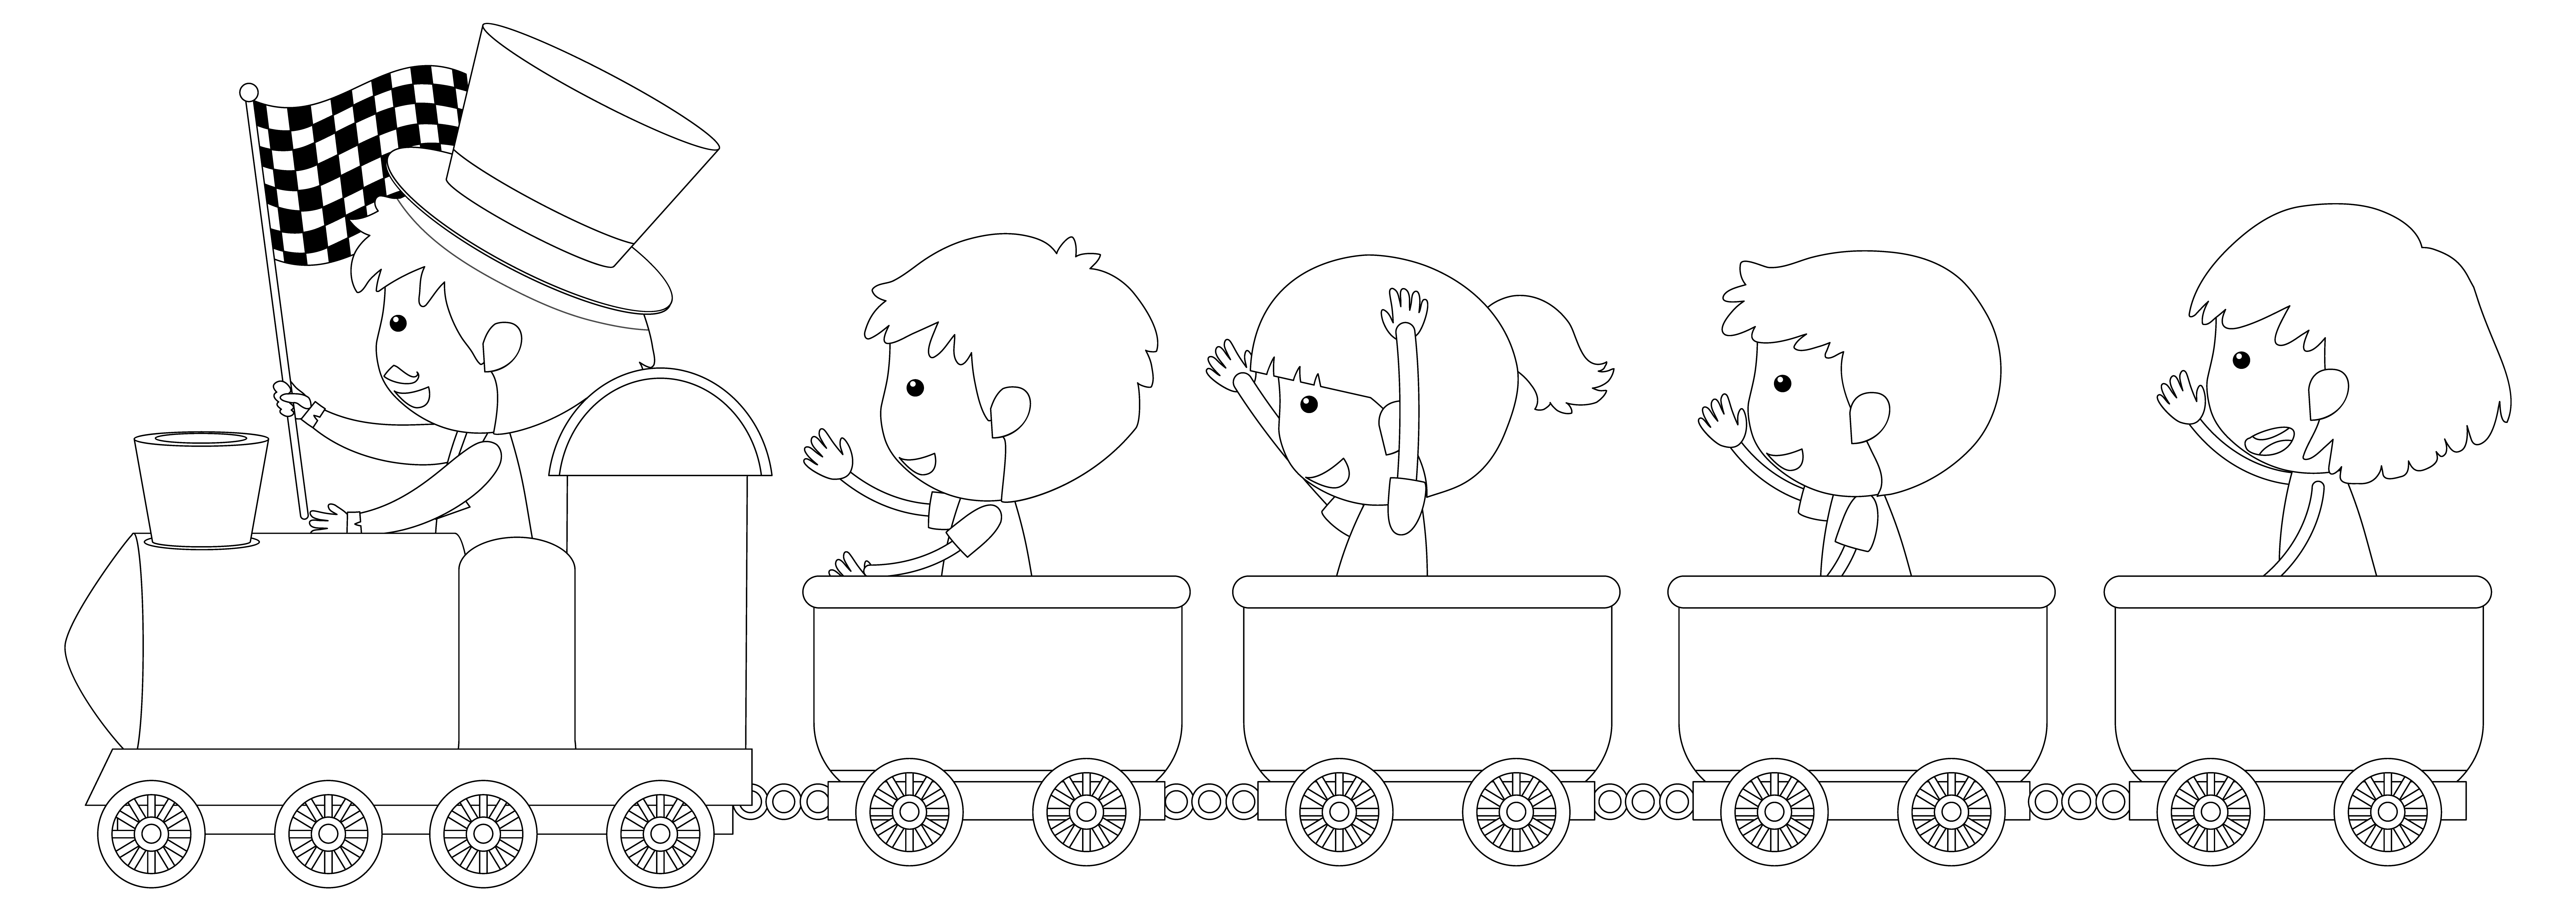 Раскраска дети катаются на поезде формата А4 в высоком качестве